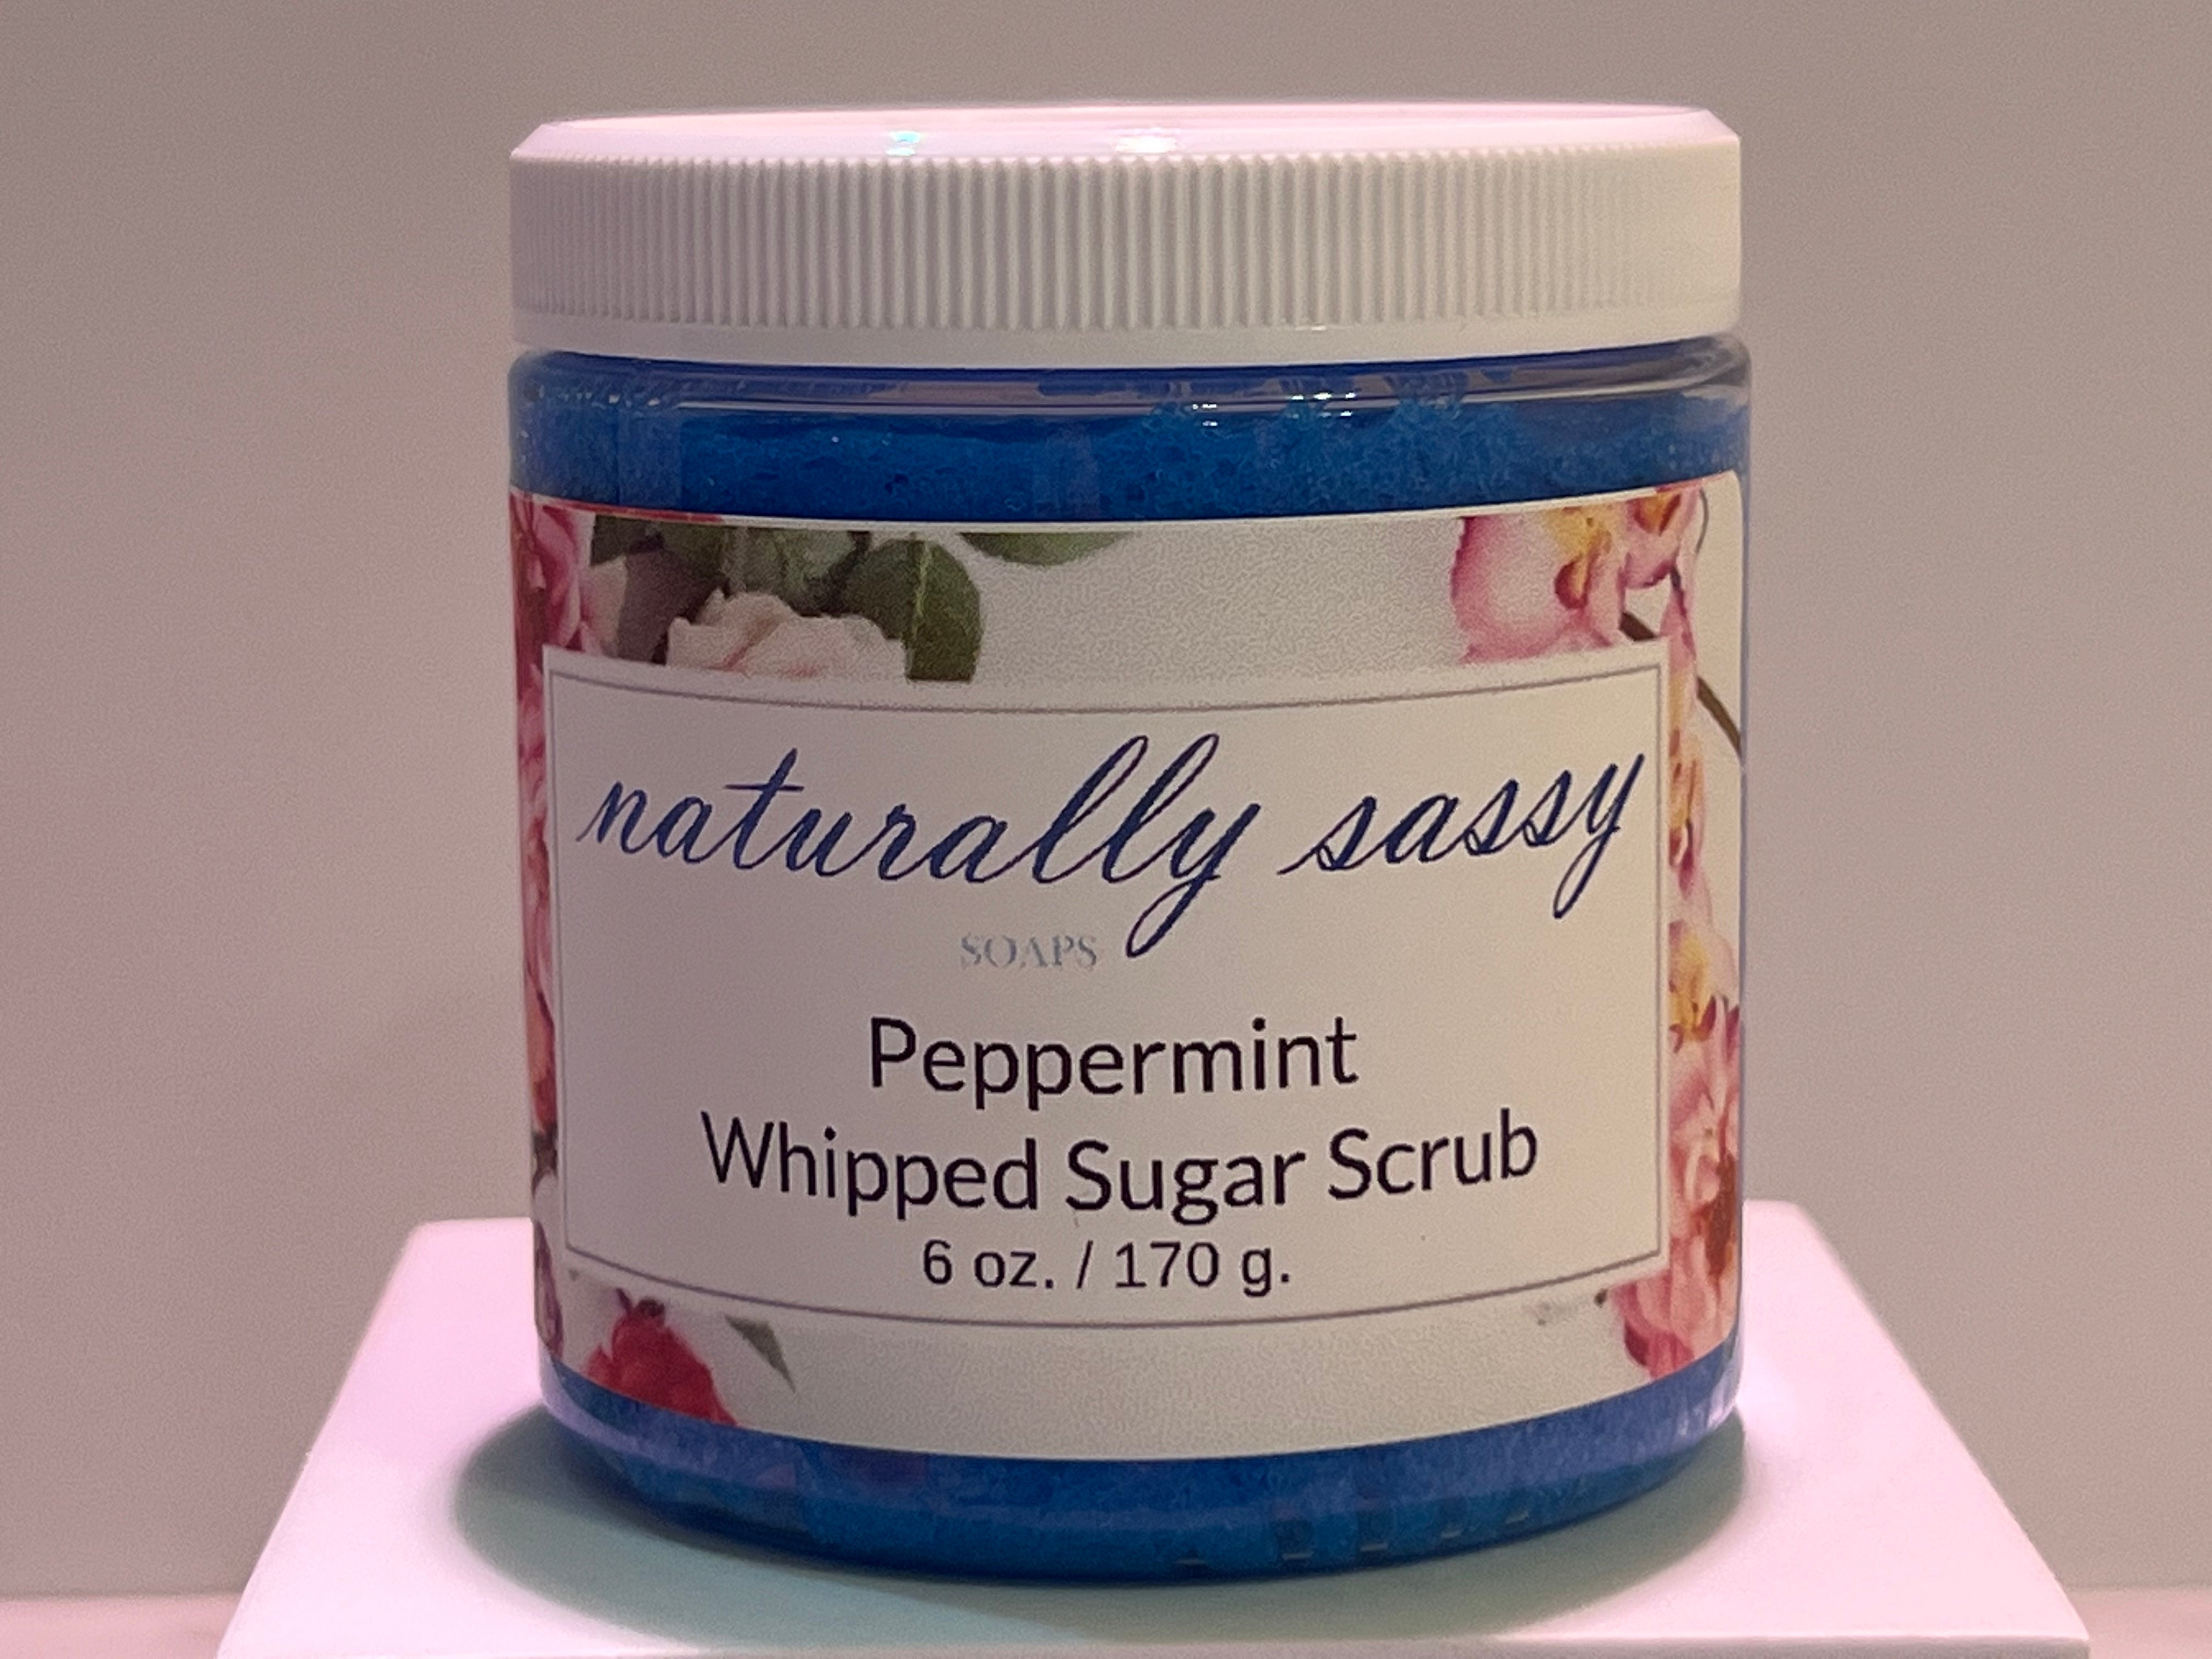 Peppermint Whipped Sugar Scrub